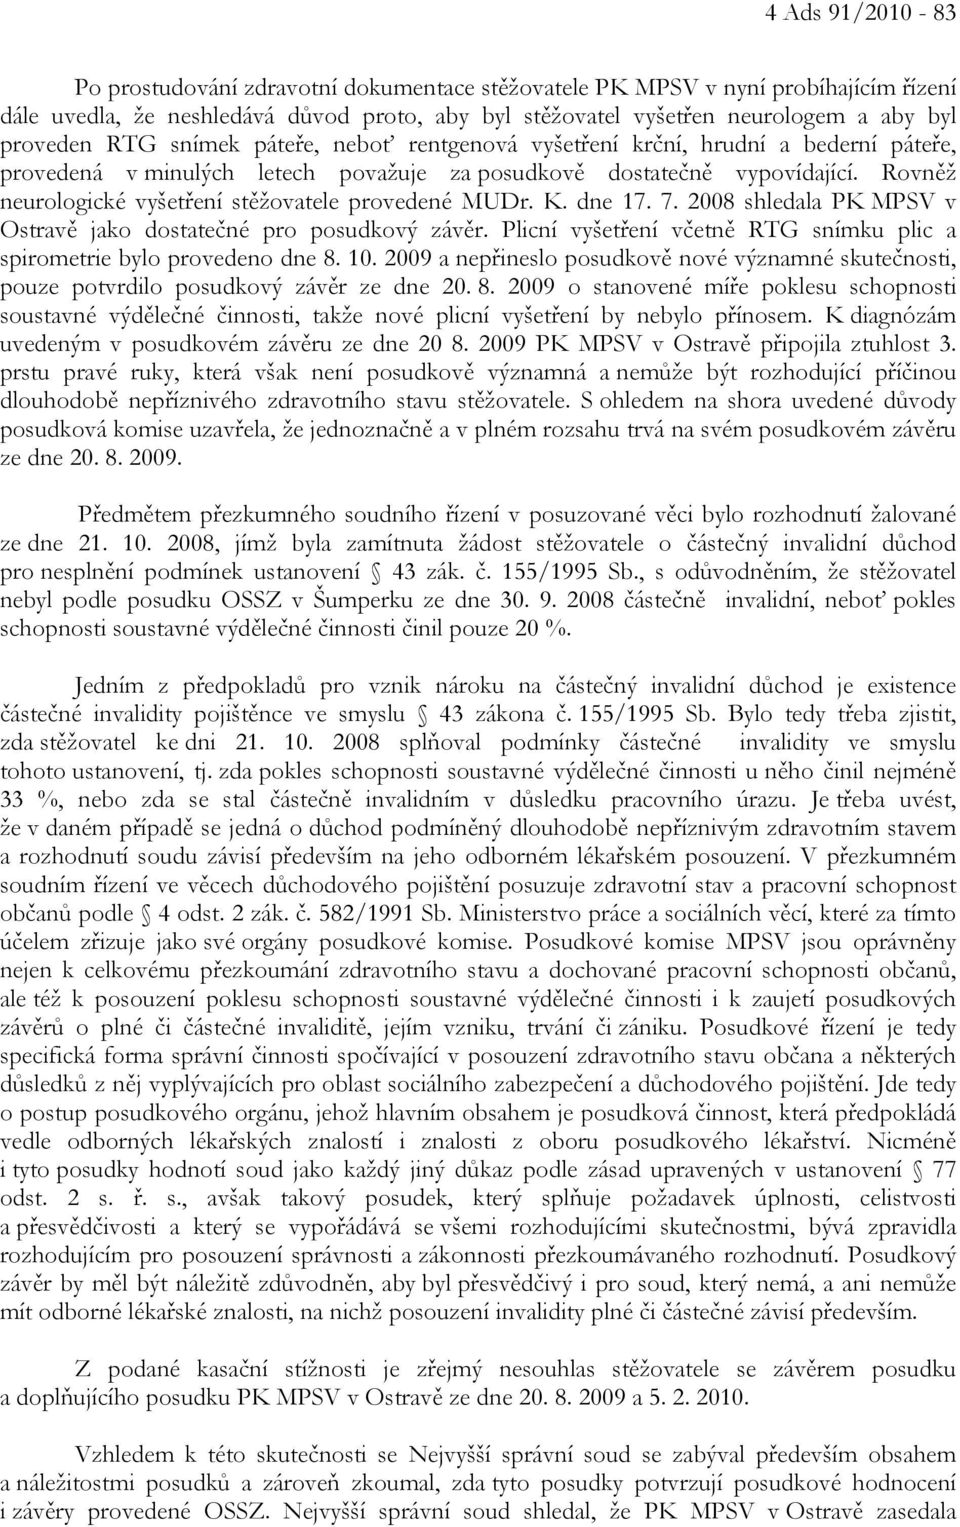 Rovněž neurologické vyšetření stěžovatele provedené MUDr. K. dne 17. 7. 2008 shledala PK MPSV v Ostravě jako dostatečné pro posudkový závěr.